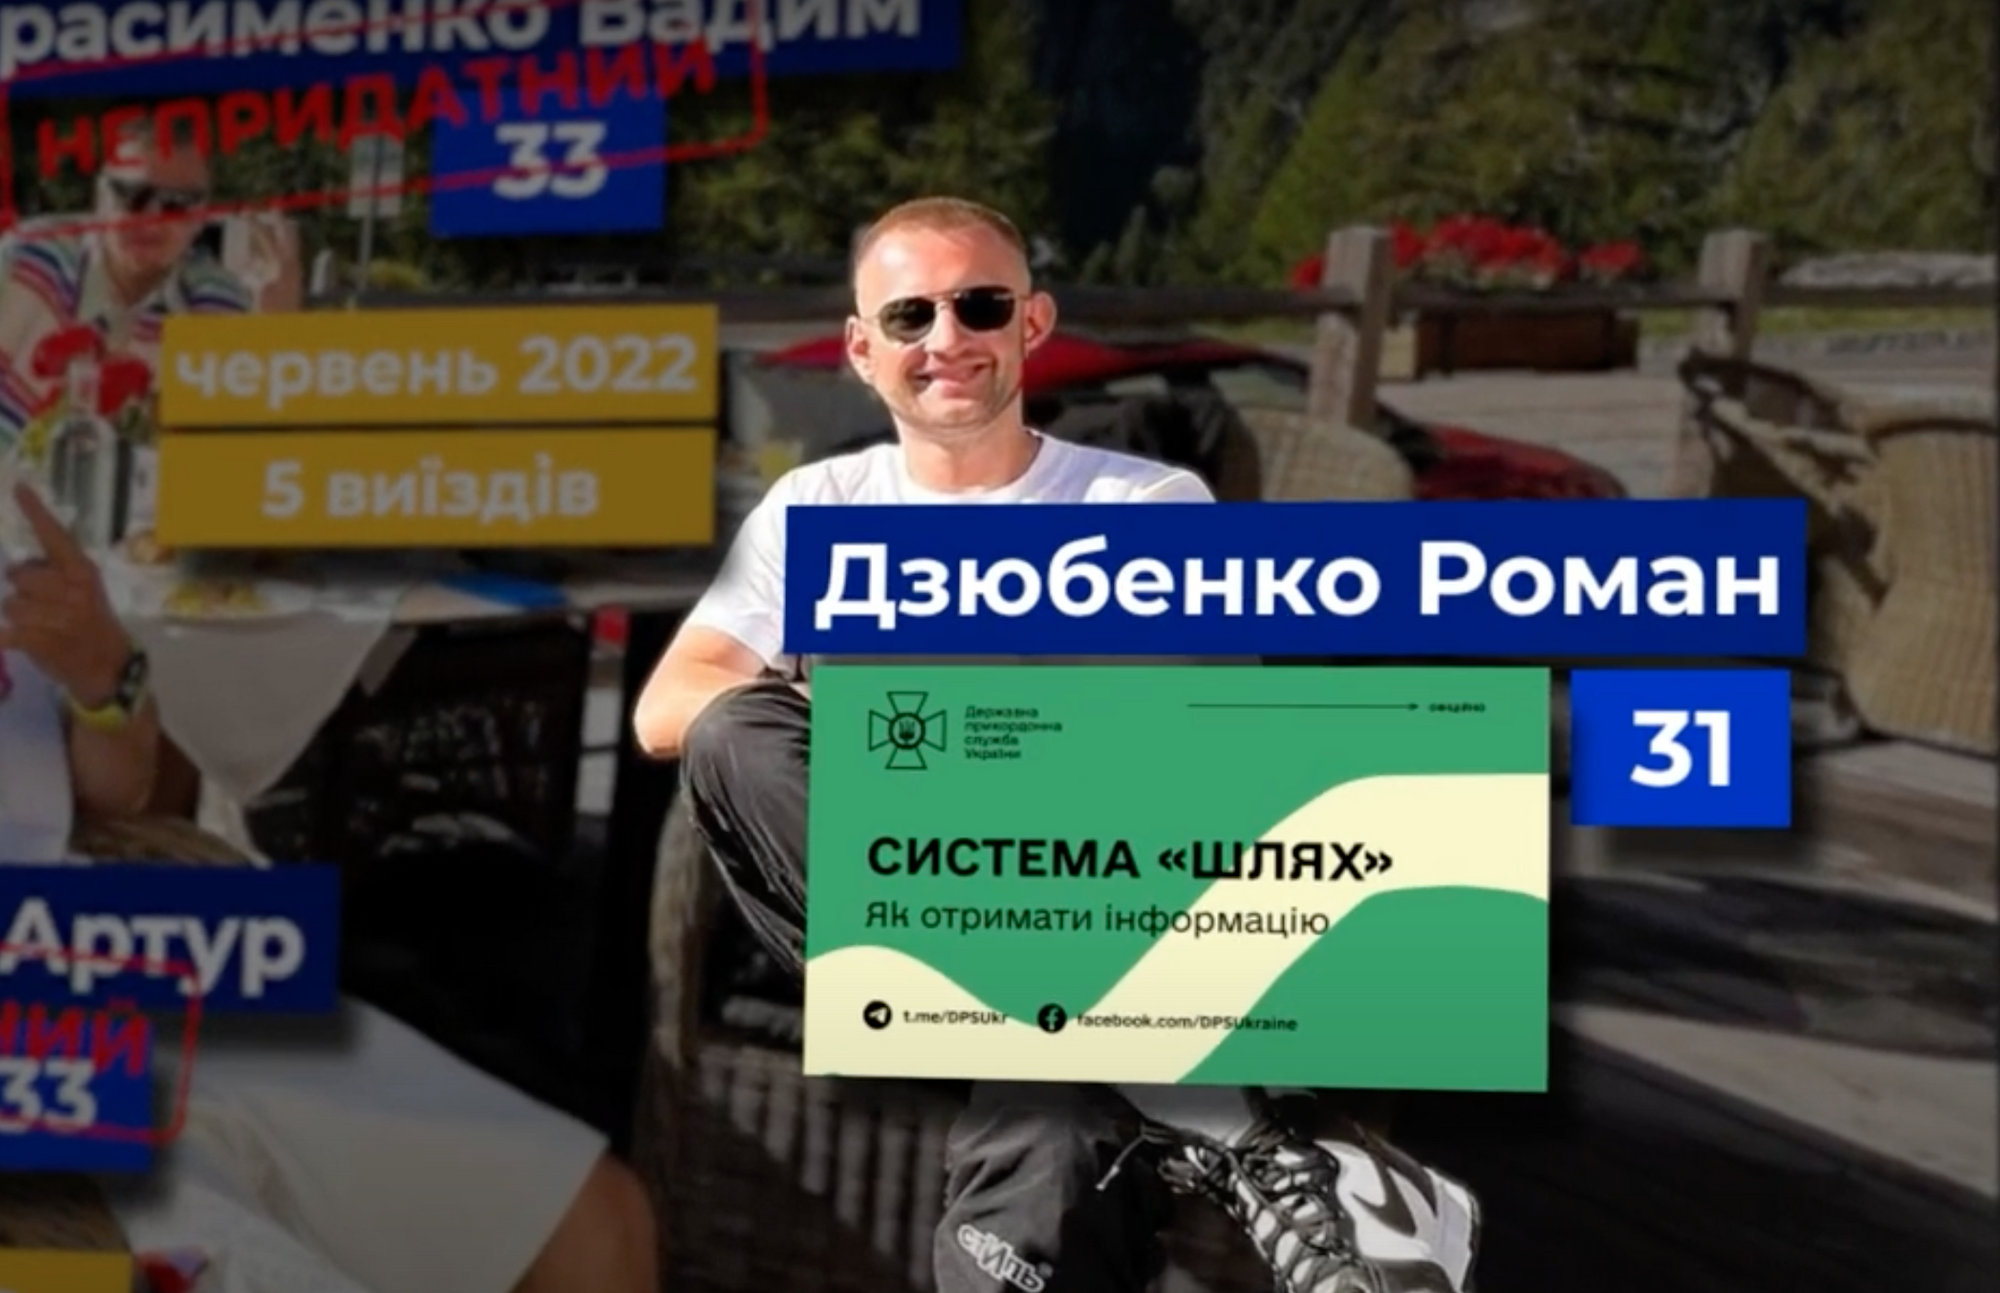 25-летний украинский миллионер с друзьями демонстративно развлекаются за границей: как они уехали? Расследование